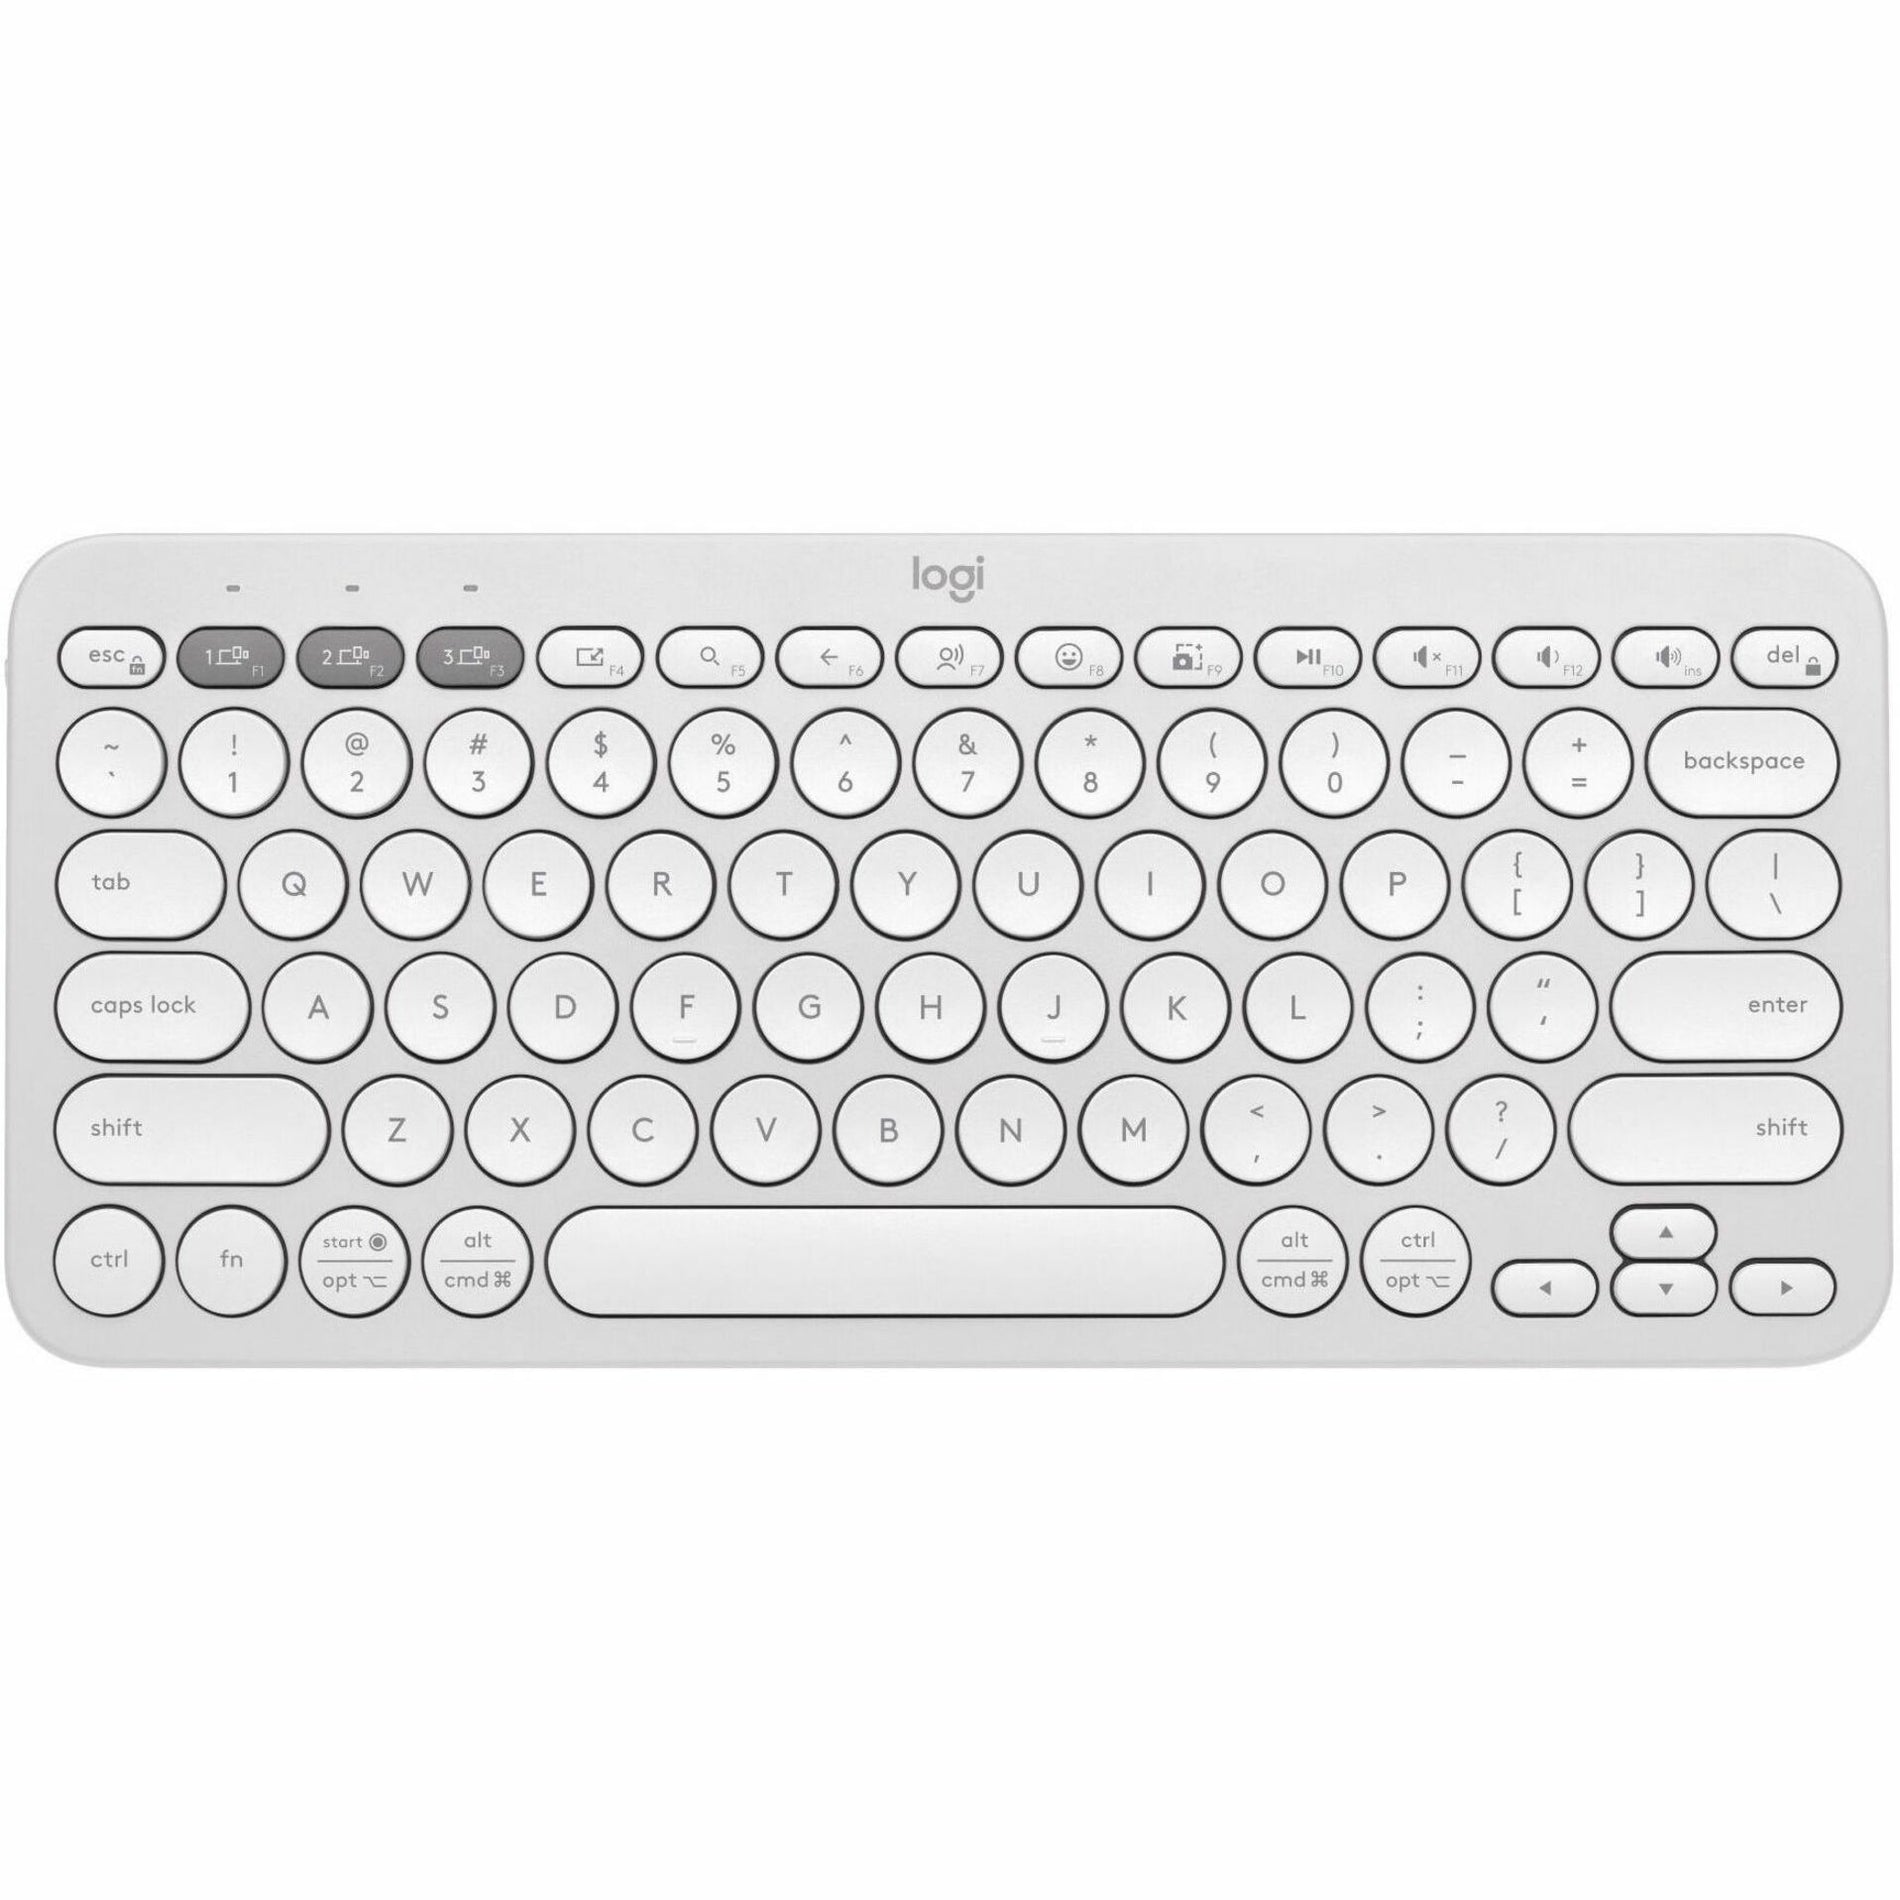 Logitech 920-012198 Pebble 2 Combo Wireless Keyboard and Mouse, Quiet Keys, Low-profile Keys, Slim